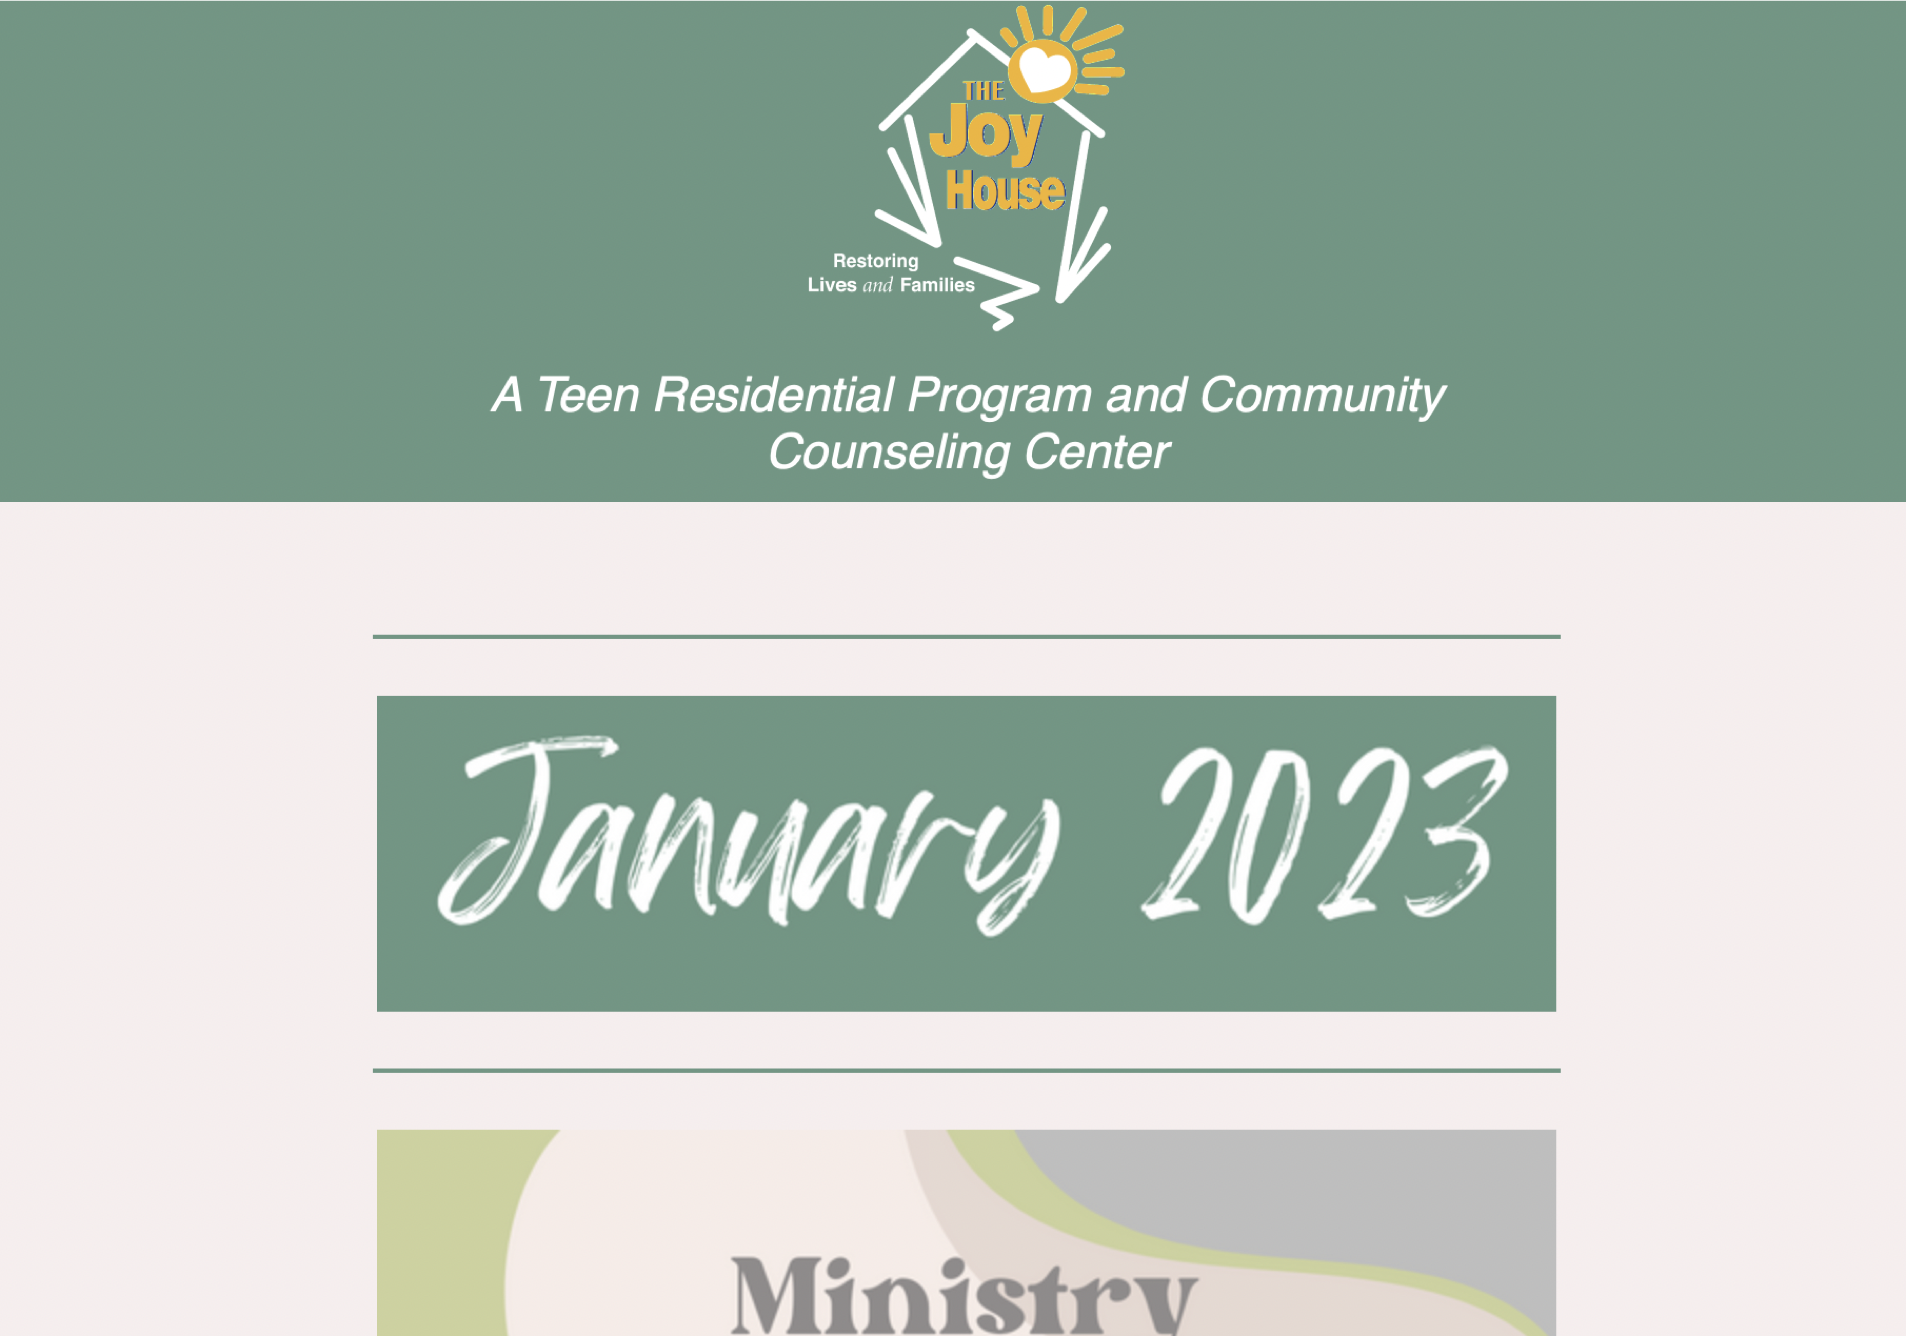 January 2023 Newsletter